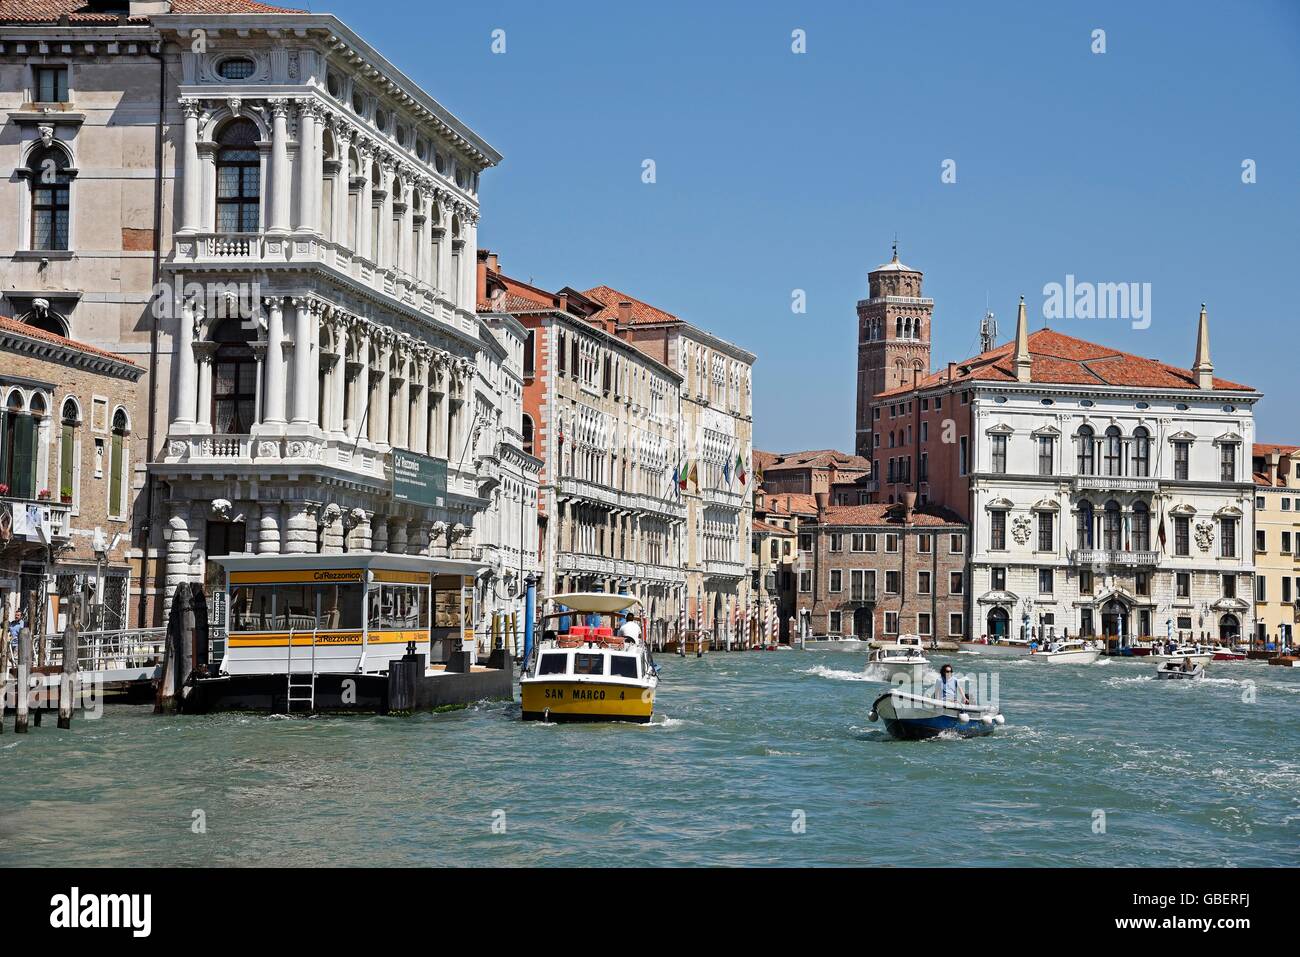 ship traffic, boat stop, gondolas, boats, palaces, Canal Grande, Grand Canal, canal, Venice, Venezia, Veneto, Italy Stock Photo